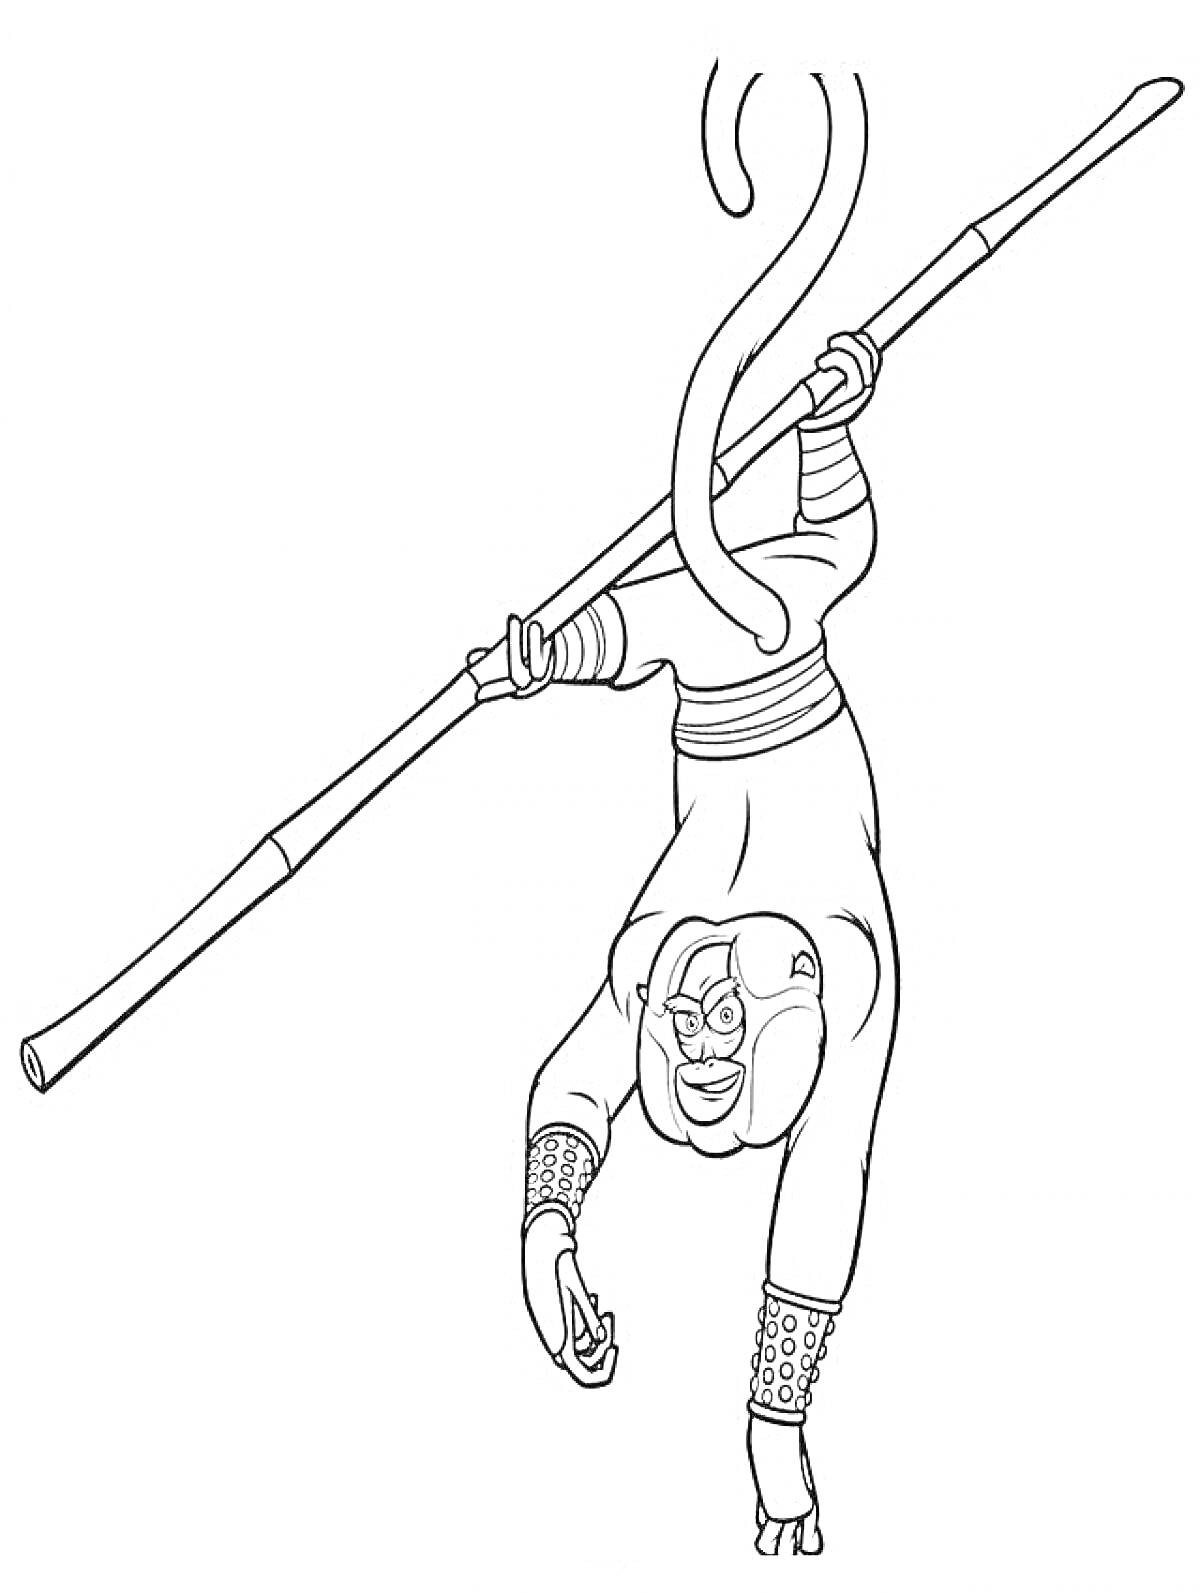 Раскраска Обезьяна-воин с посохом, висящая вниз головой на хвосте